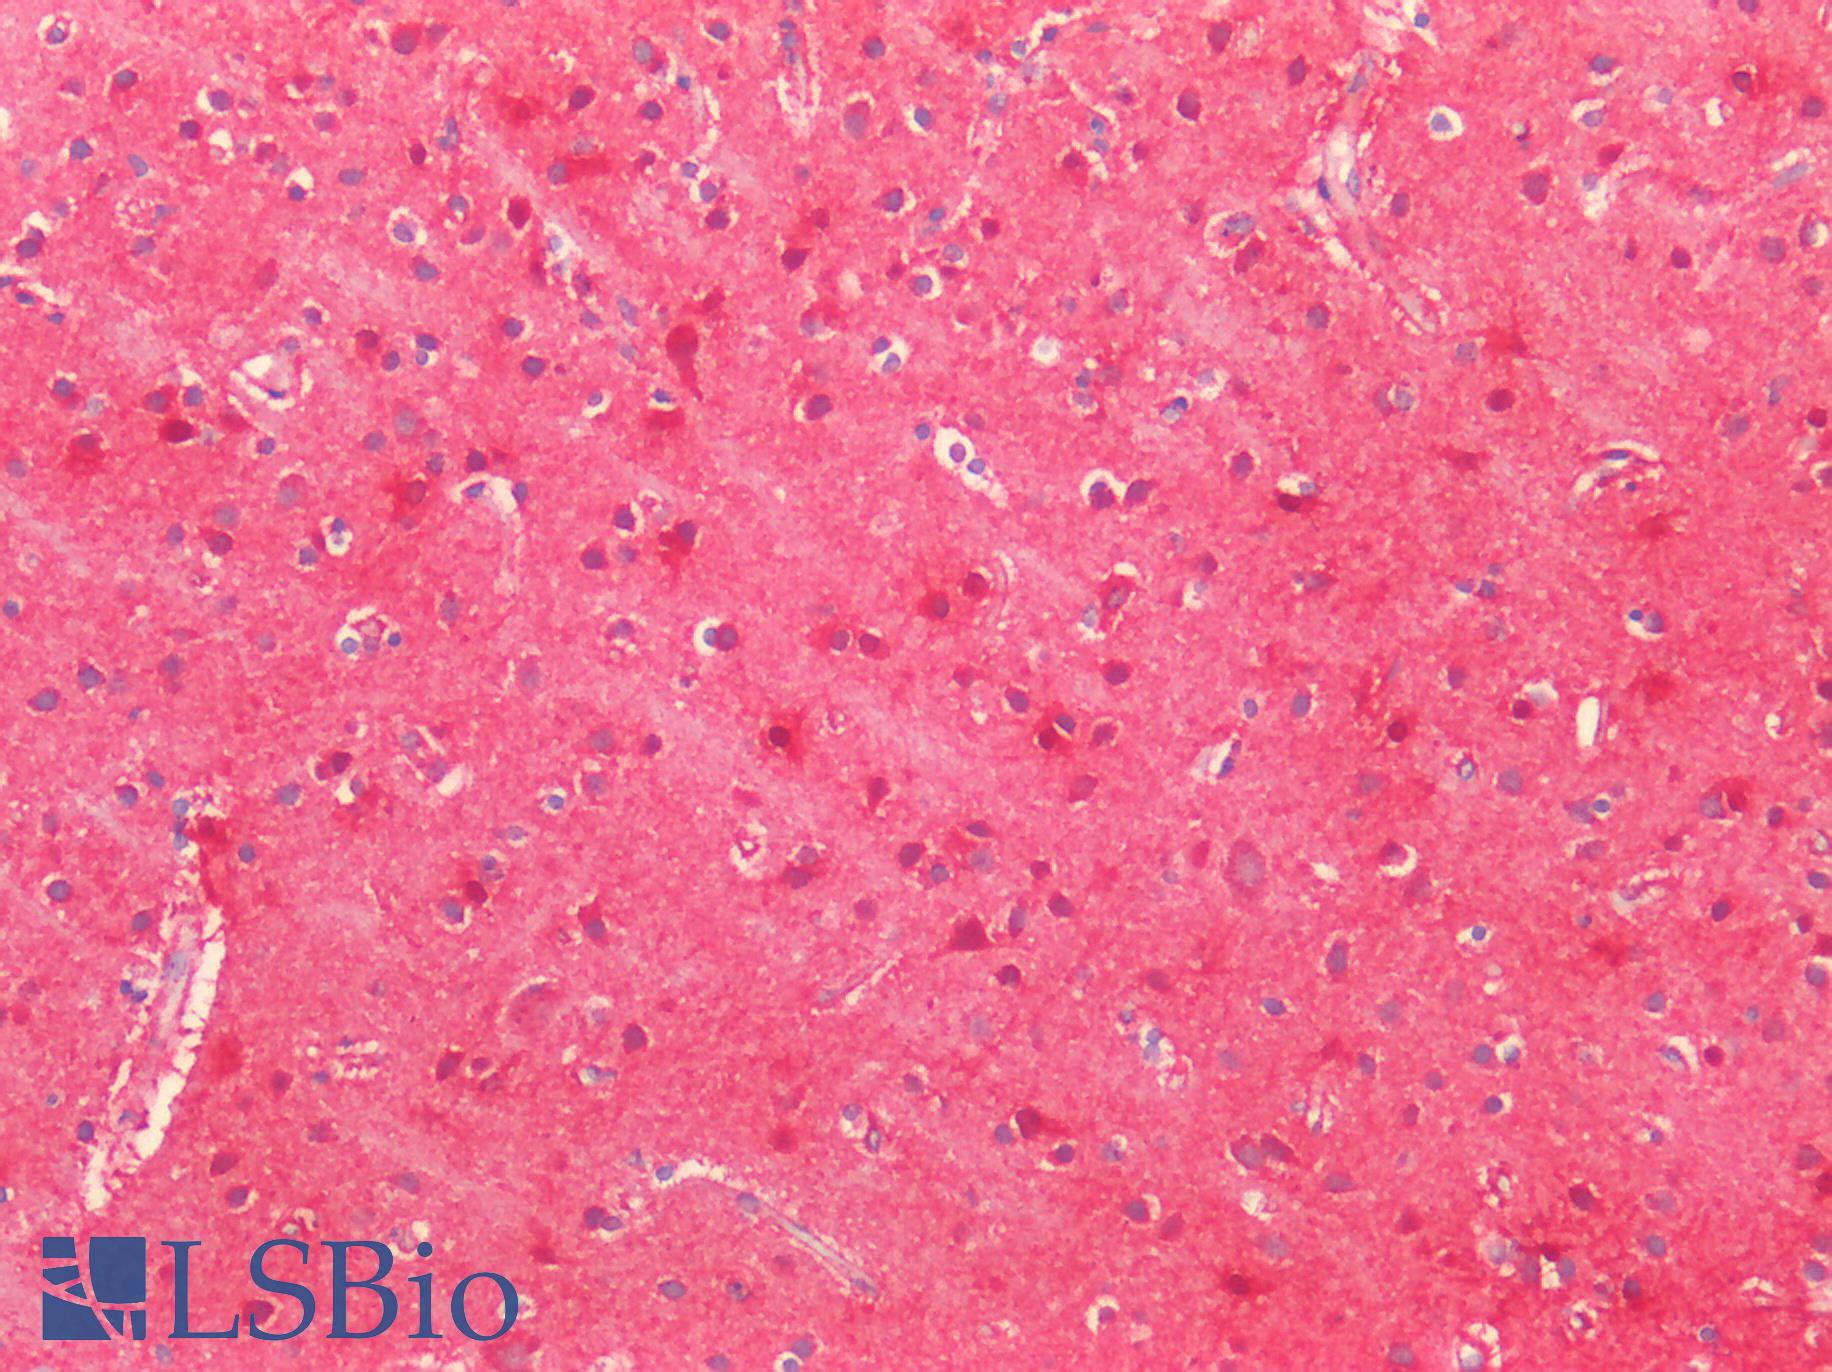 SOD2 / Mn SOD Antibody - Human Brain, Cortex: Formalin-Fixed, Paraffin-Embedded (FFPE)